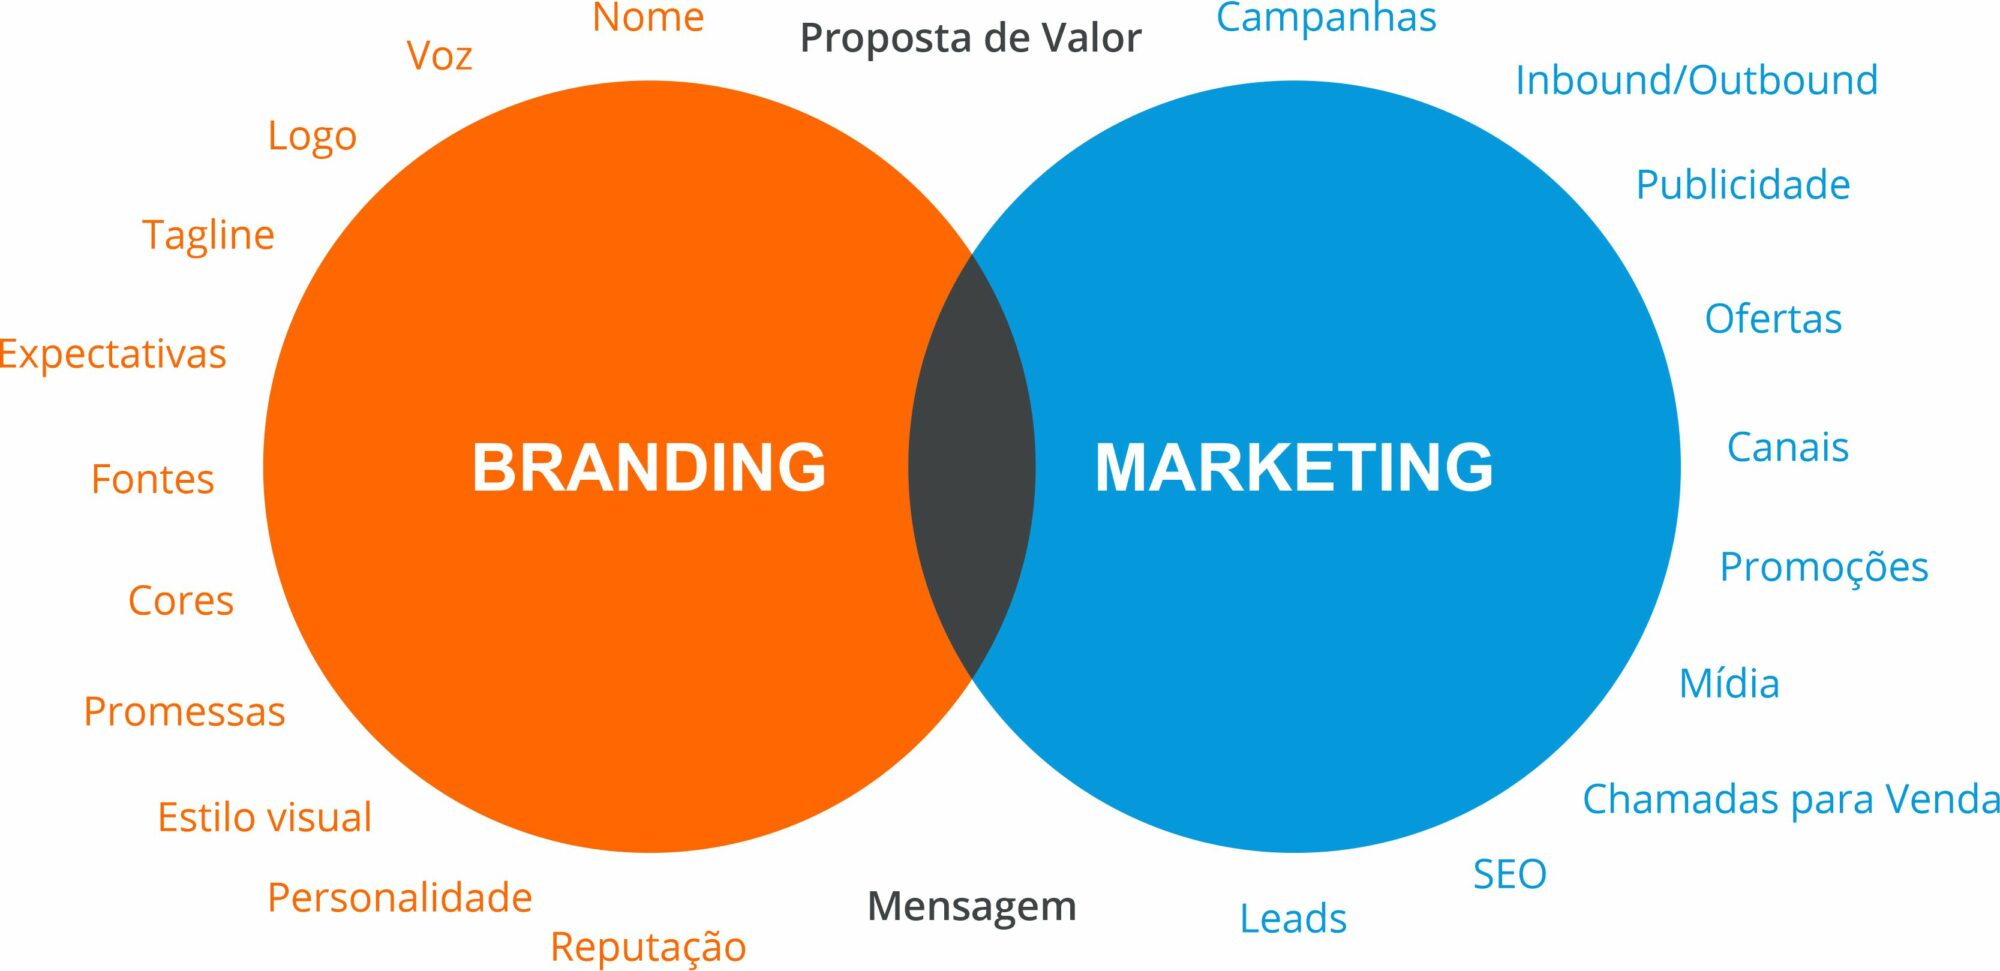 ᐅ Marketing brand: o que é e como ajuda no reconhecimento da marca